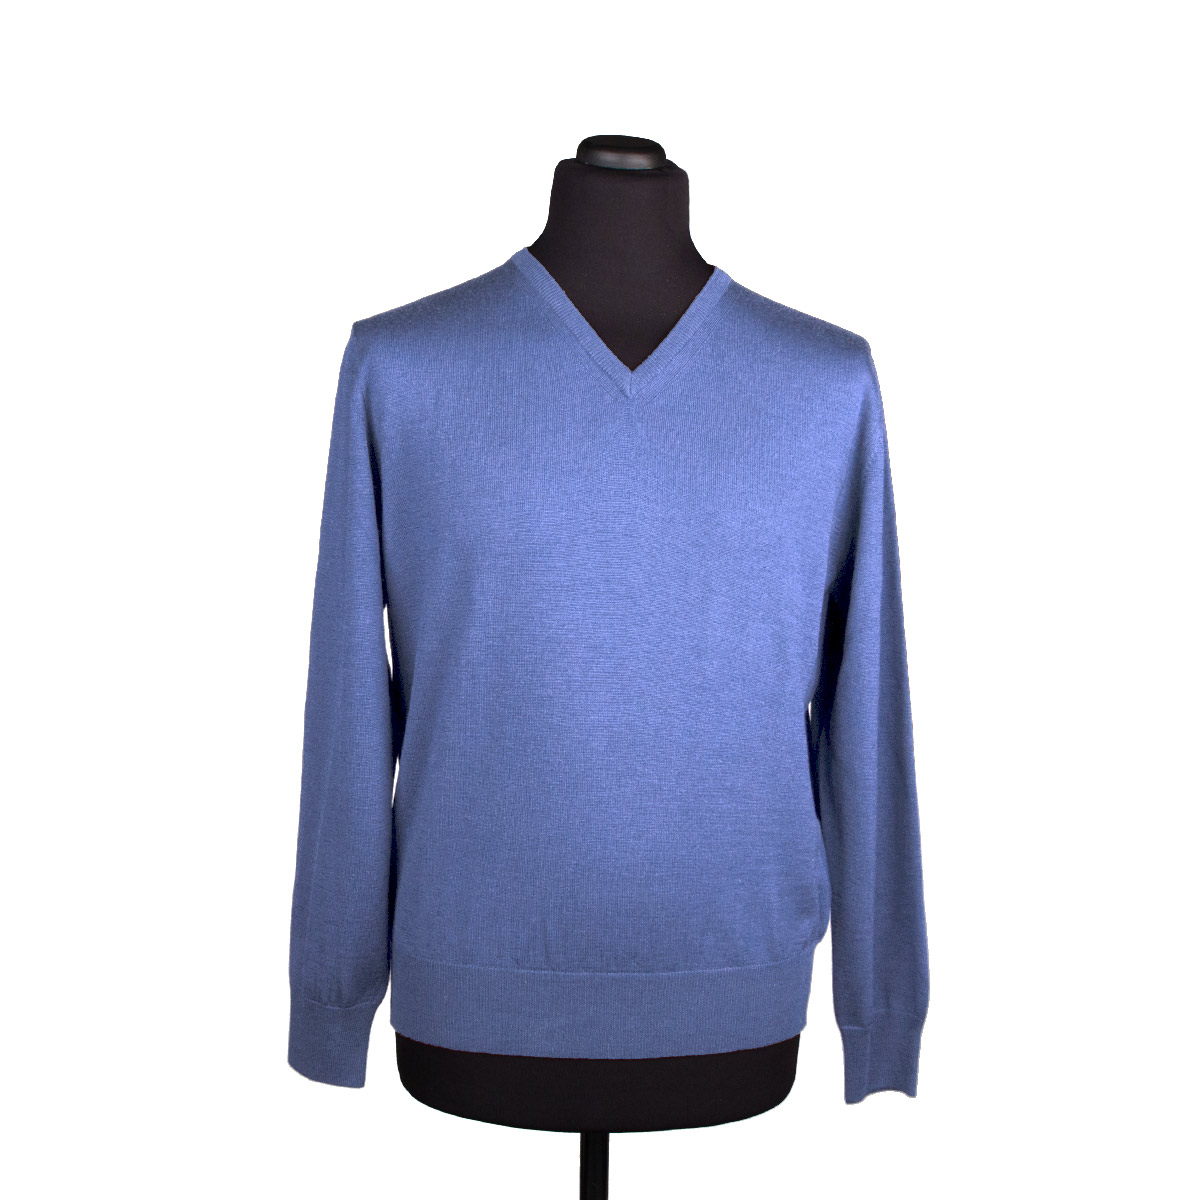 Silk cashmere V-neck sweater for men, lavender blue - Di Franco Moda ...